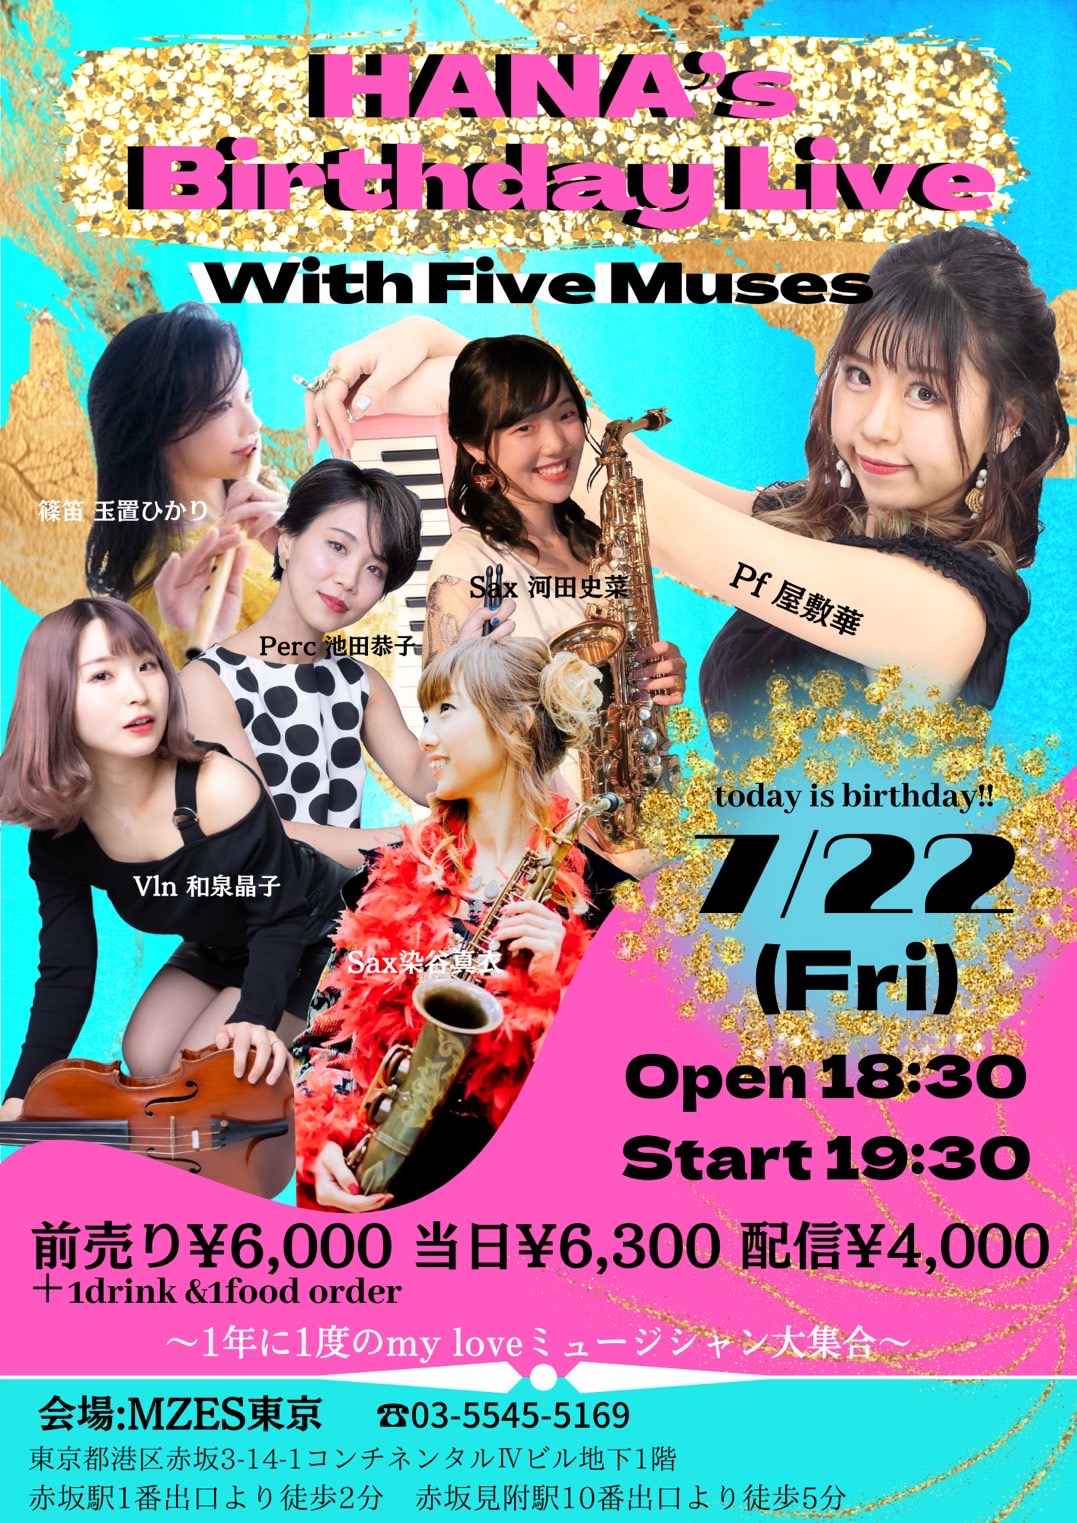 【配信】HANA’s Birthday Live with five muses